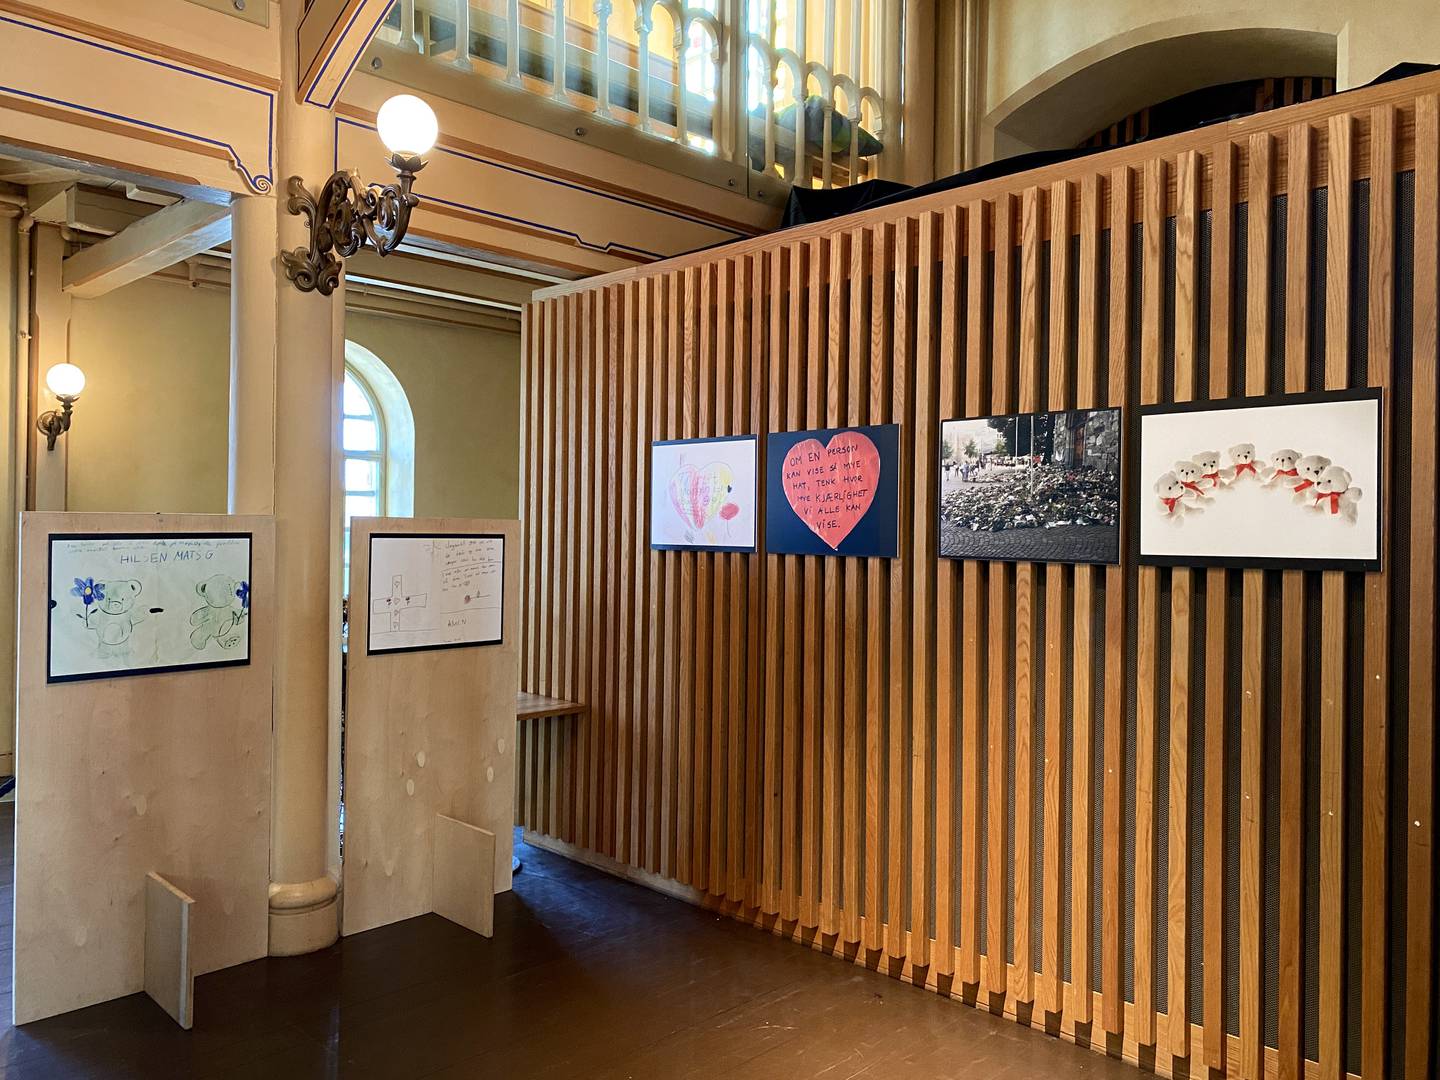 Utstillingen består av 12 bilder av tegninger, ord og gjenstander som ble lagt utenfor Domkirken.